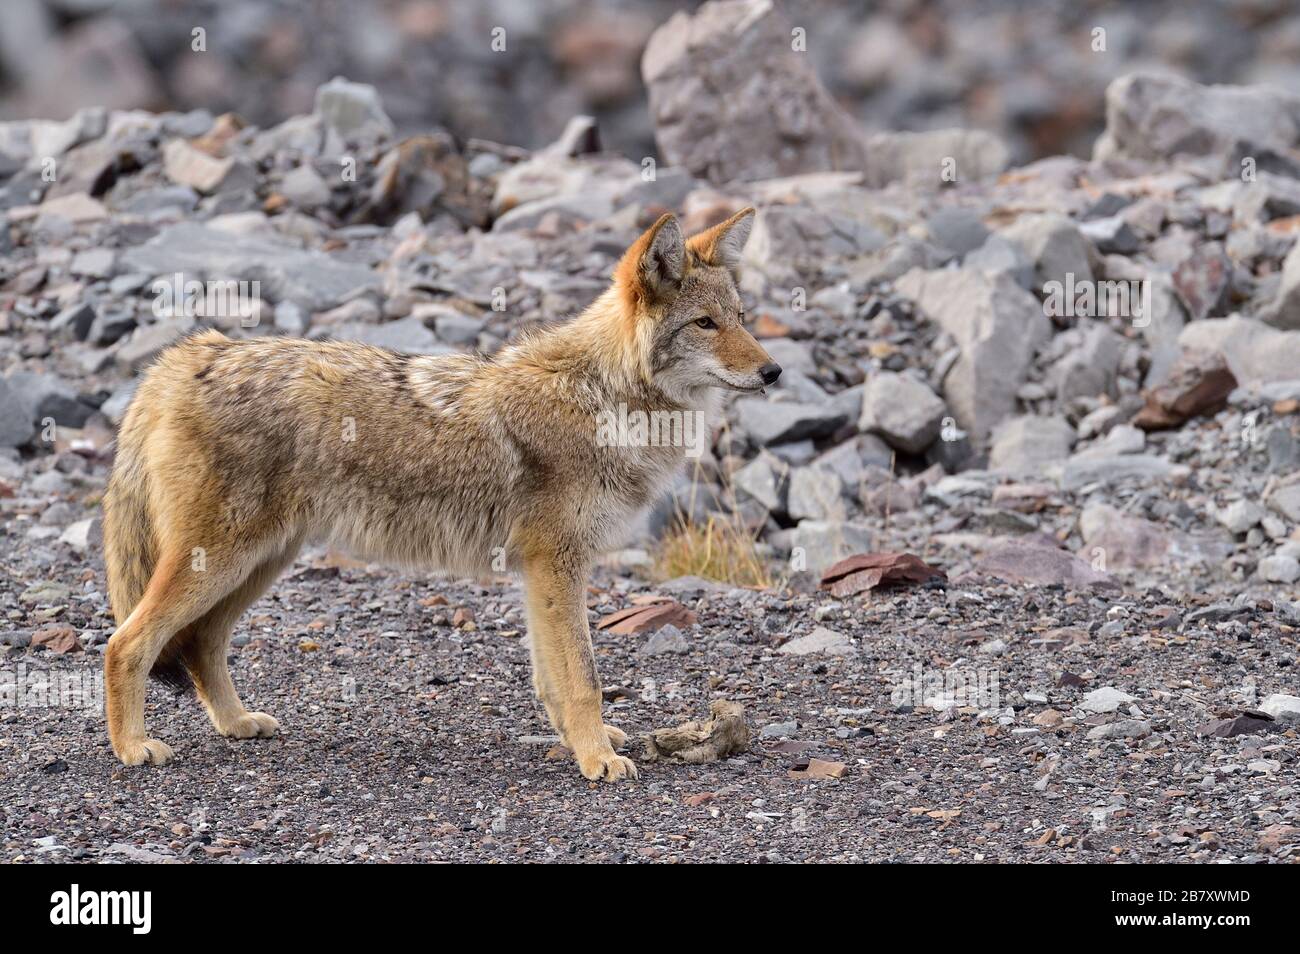 Un coyote sauvage Canis latrans; se tenant sur un terrain rocheux qui s'éloigne dans les régions rurales de l'Alberta Canada Banque D'Images